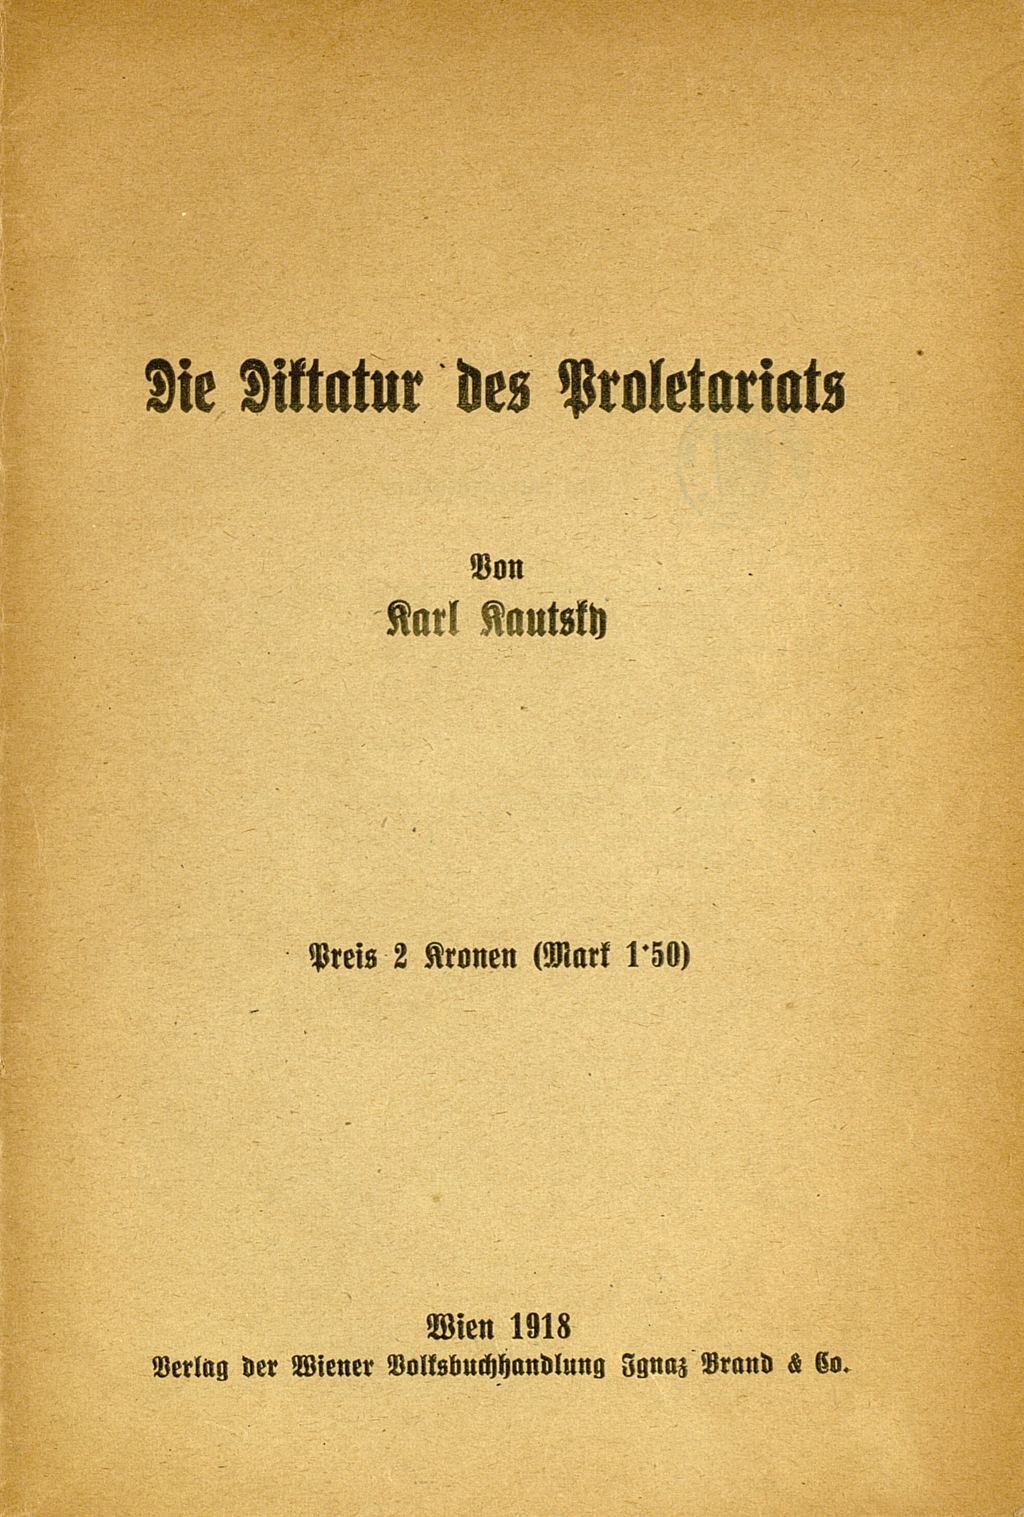 Zu sehen ist das Titelblatt der Veröffentlichung von Karl Kautsky.